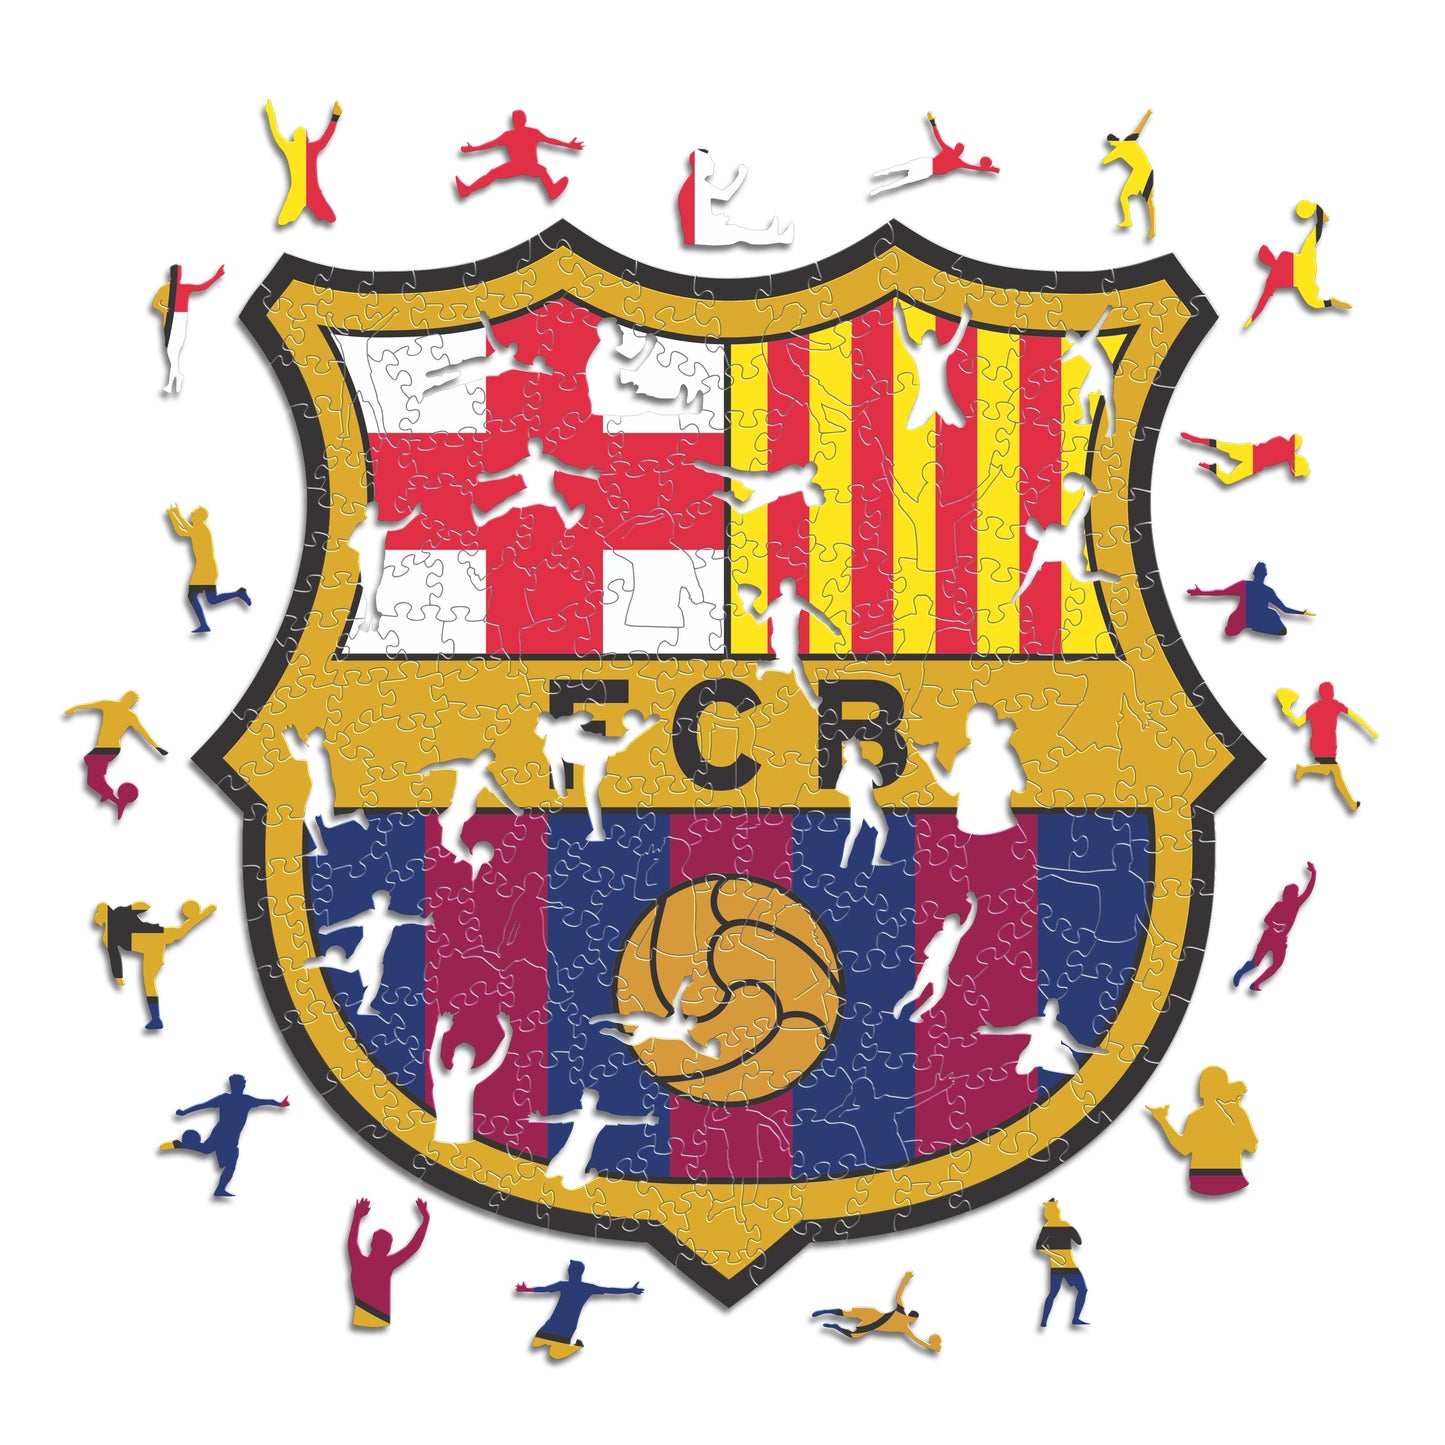 2 PACK FC Barcelona® Escudo + Jersey